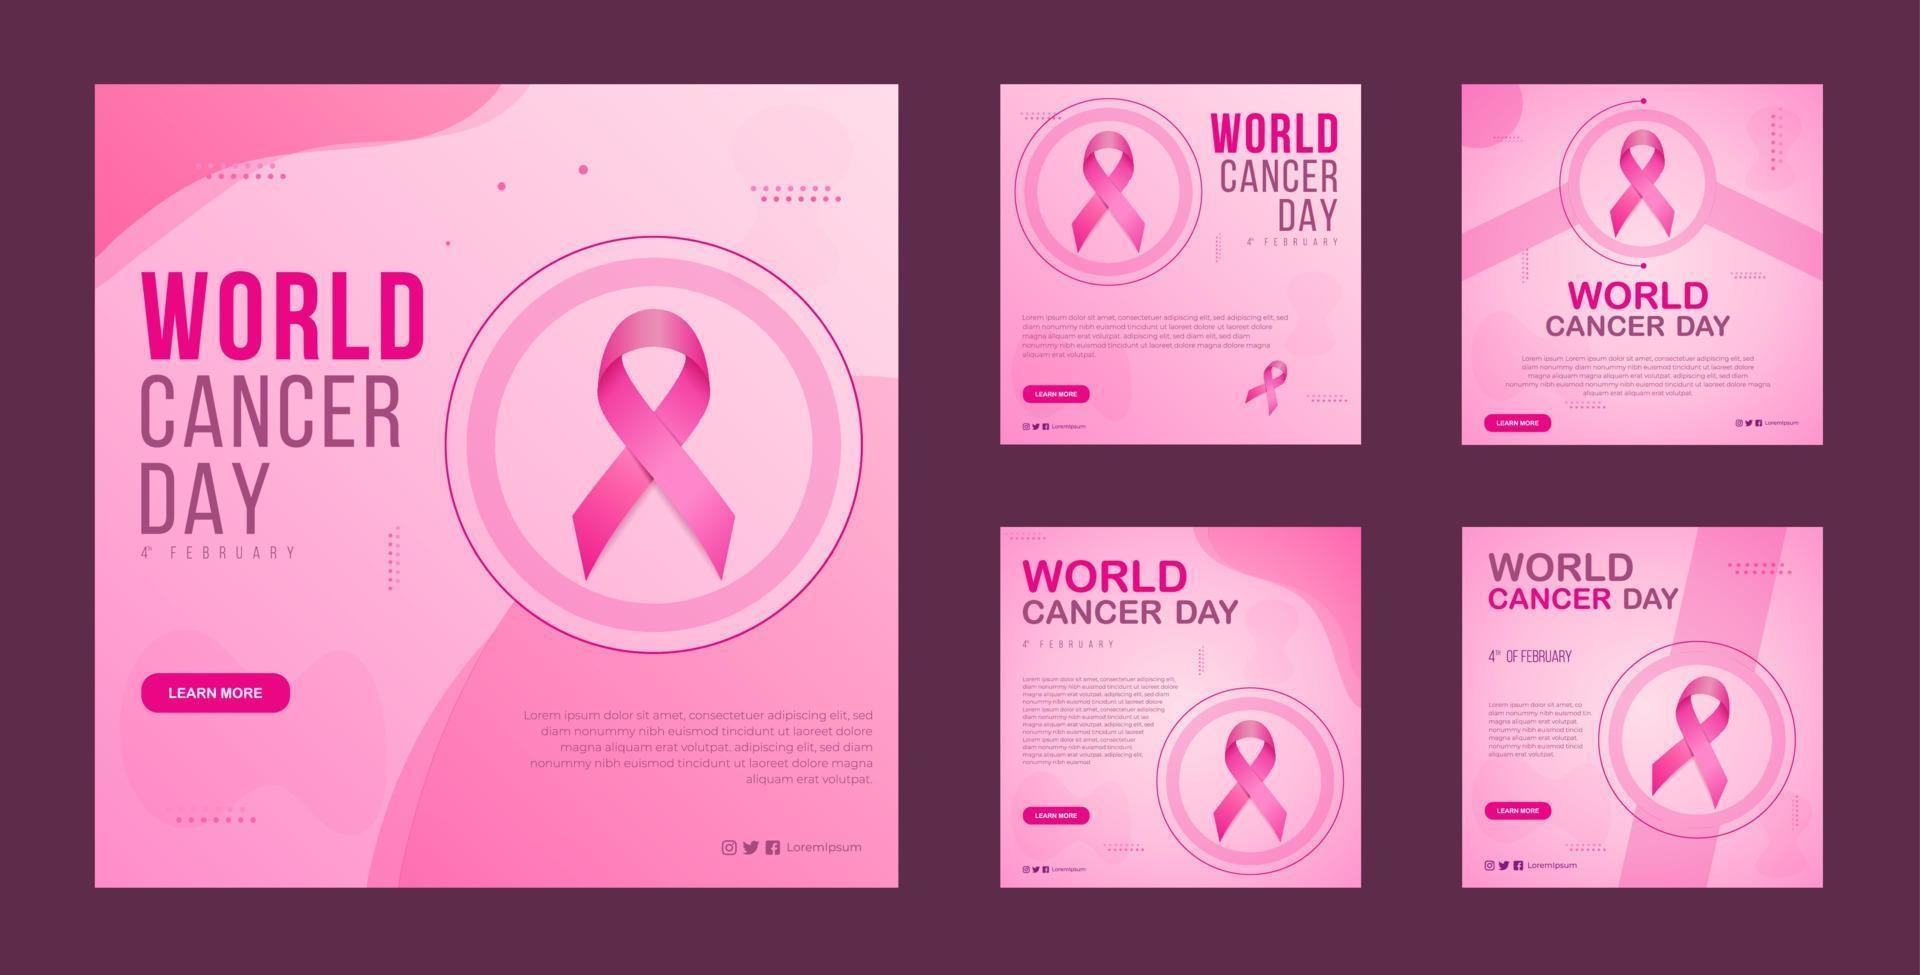 degradado día mundial del cáncer colección de publicaciones de instagram de redes sociales contra el cáncer vector